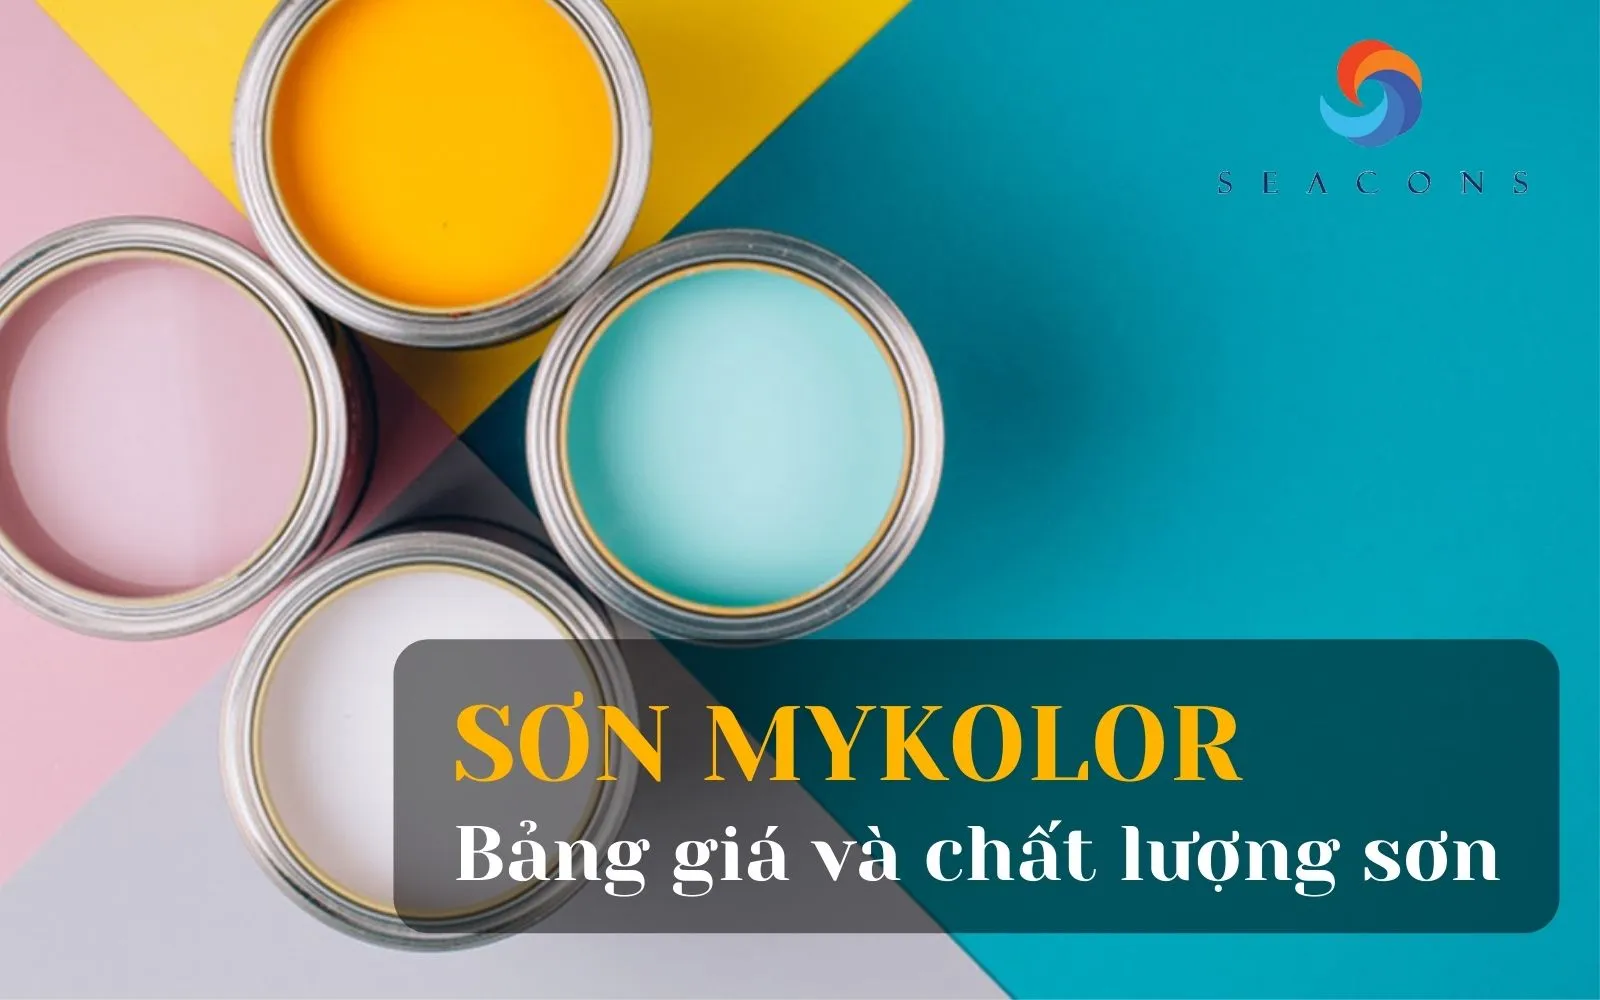 Bảng giá sơn Mykolor đa dạng, phù hợp với nhu cầu của mọi khách hàng. Với chất lượng tuyệt vời và giá cả hợp lý, sơn Mykolor sẽ giúp bạn tạo nên không gian sống hoàn hảo.